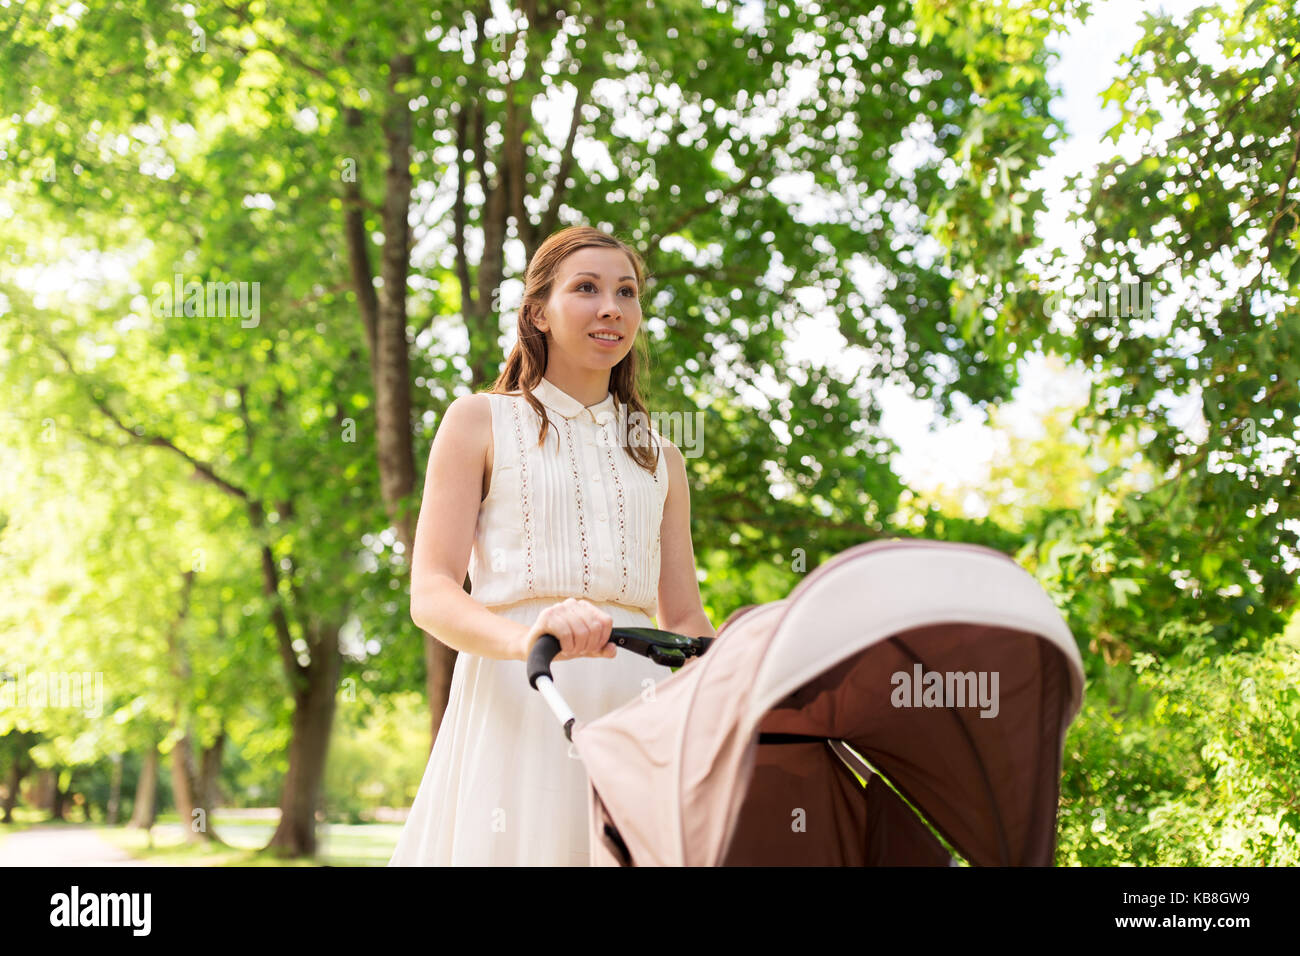 Heureuse Mère avec enfant en poussette au parc d'été Banque D'Images